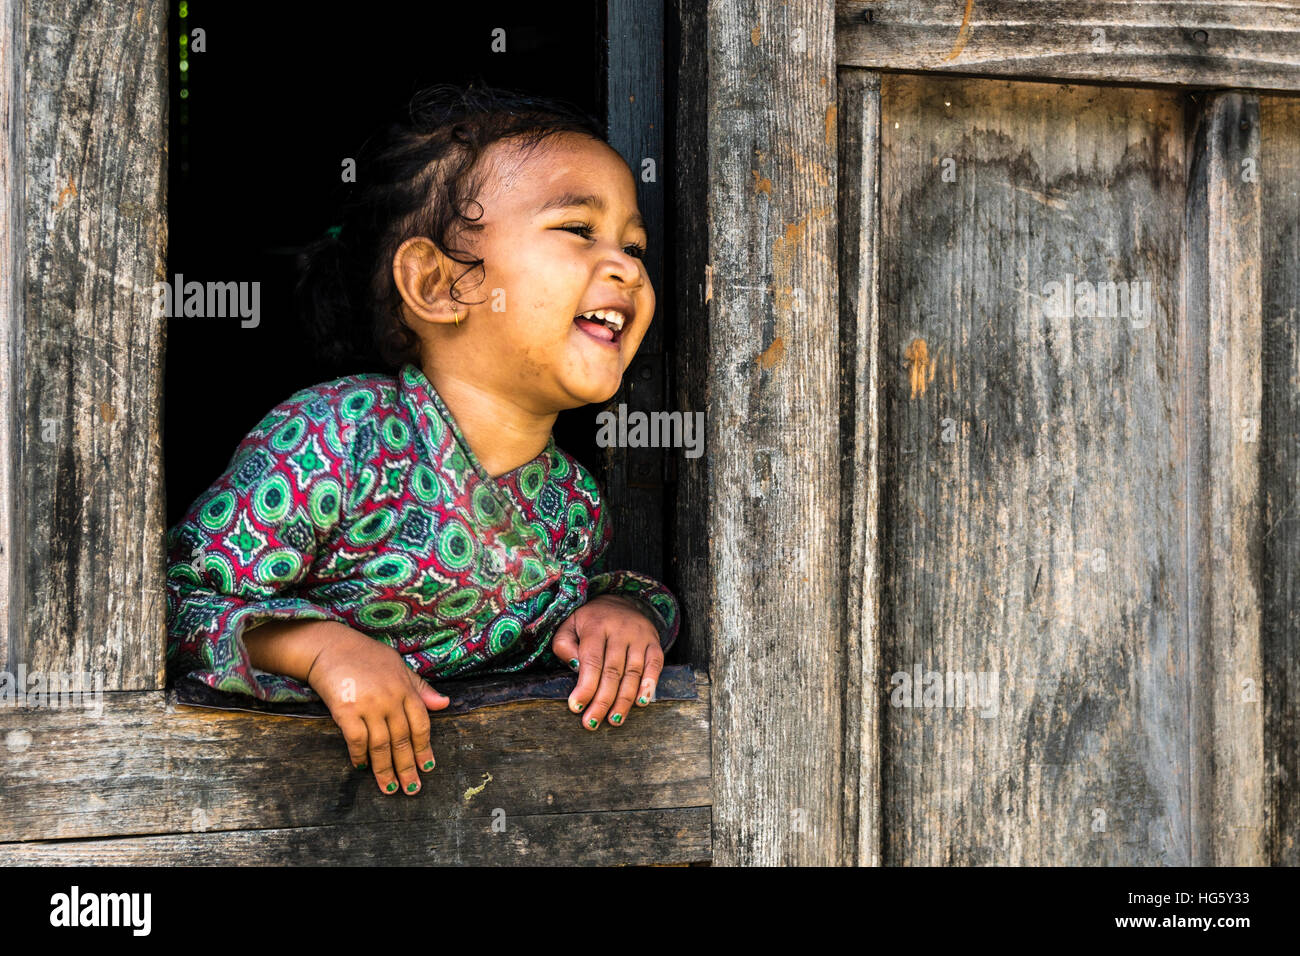 Portrait de rire petite fille, Upper Marsyangdi vallée, regardant par une fenêtre, Bagarchap, District de Manang, Népal Banque D'Images